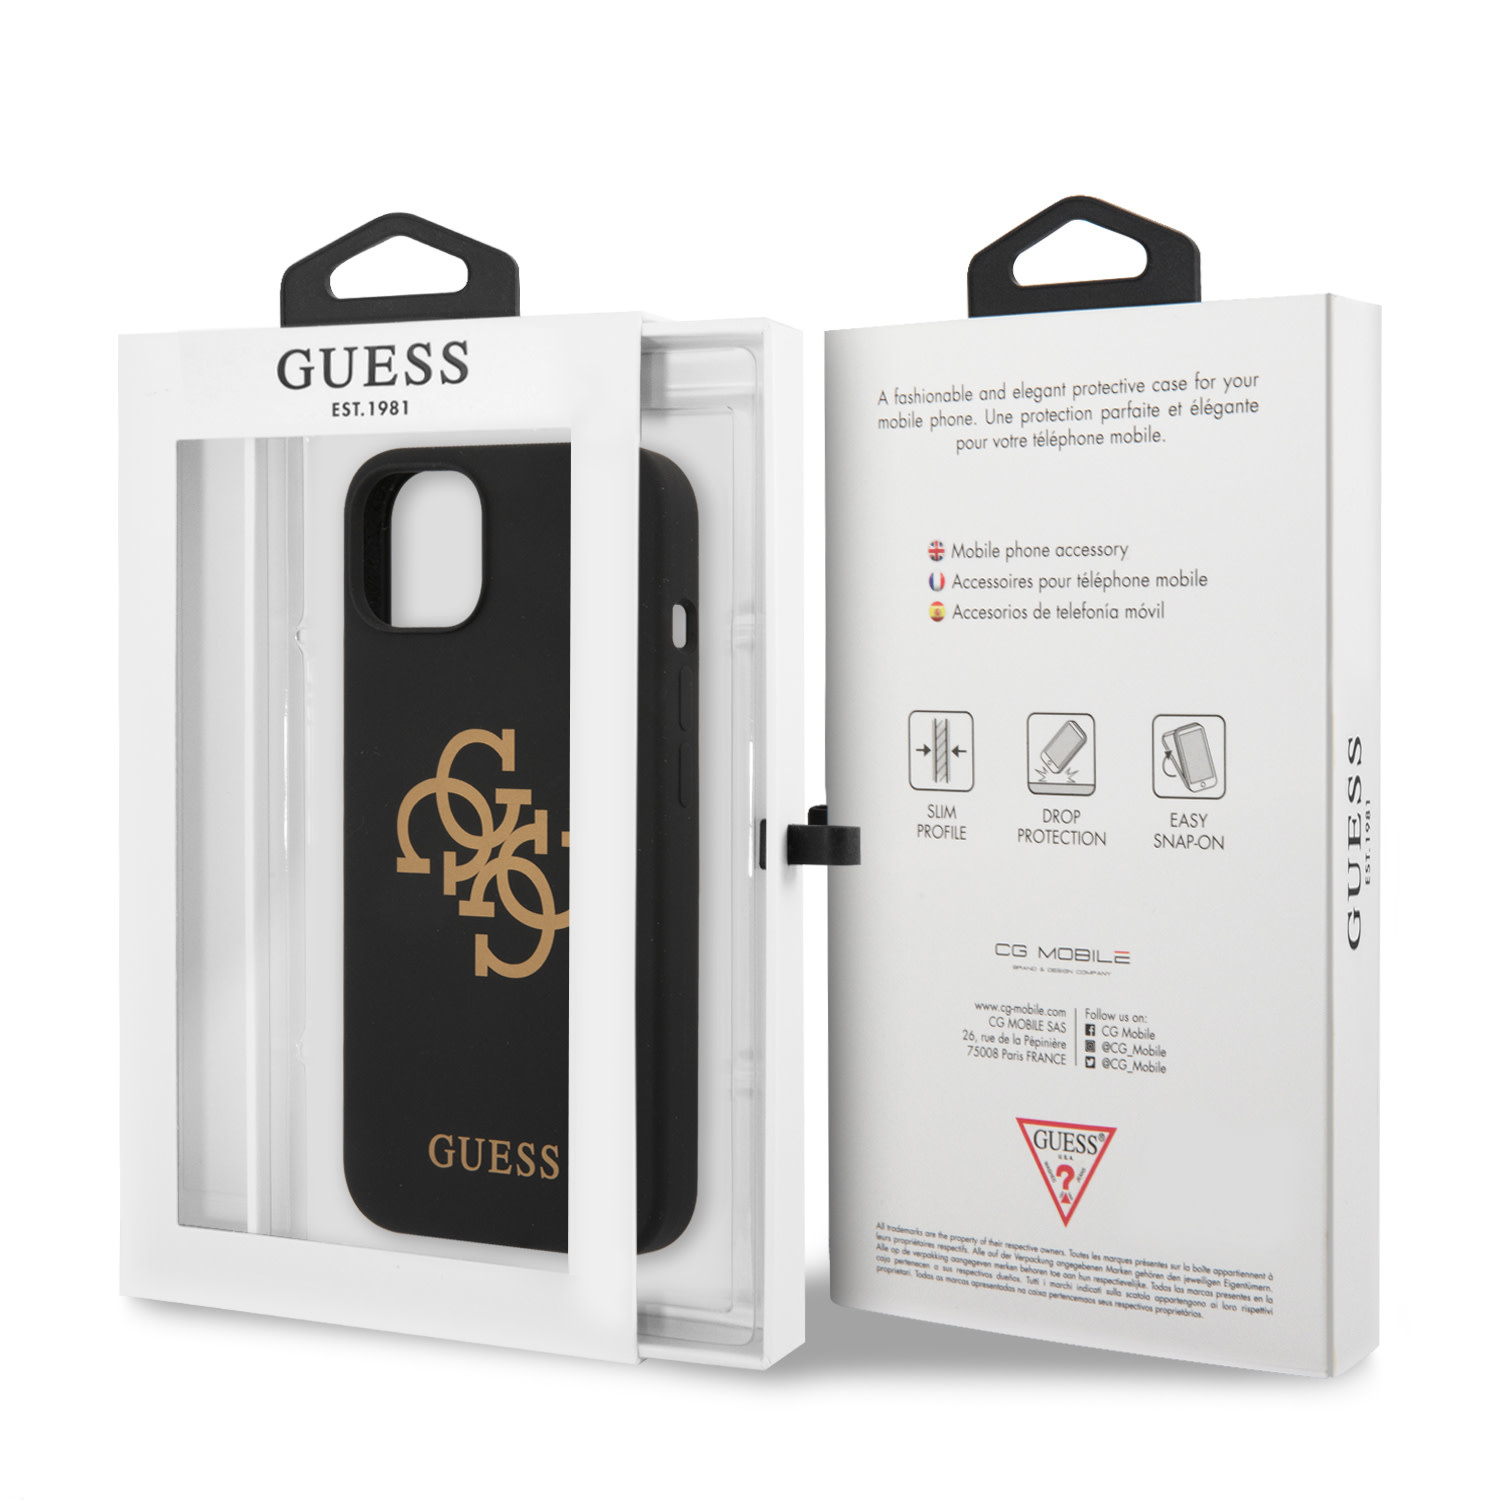 Guess iPhone 13 hátlaptok - Arany 4G Logo - Fekete